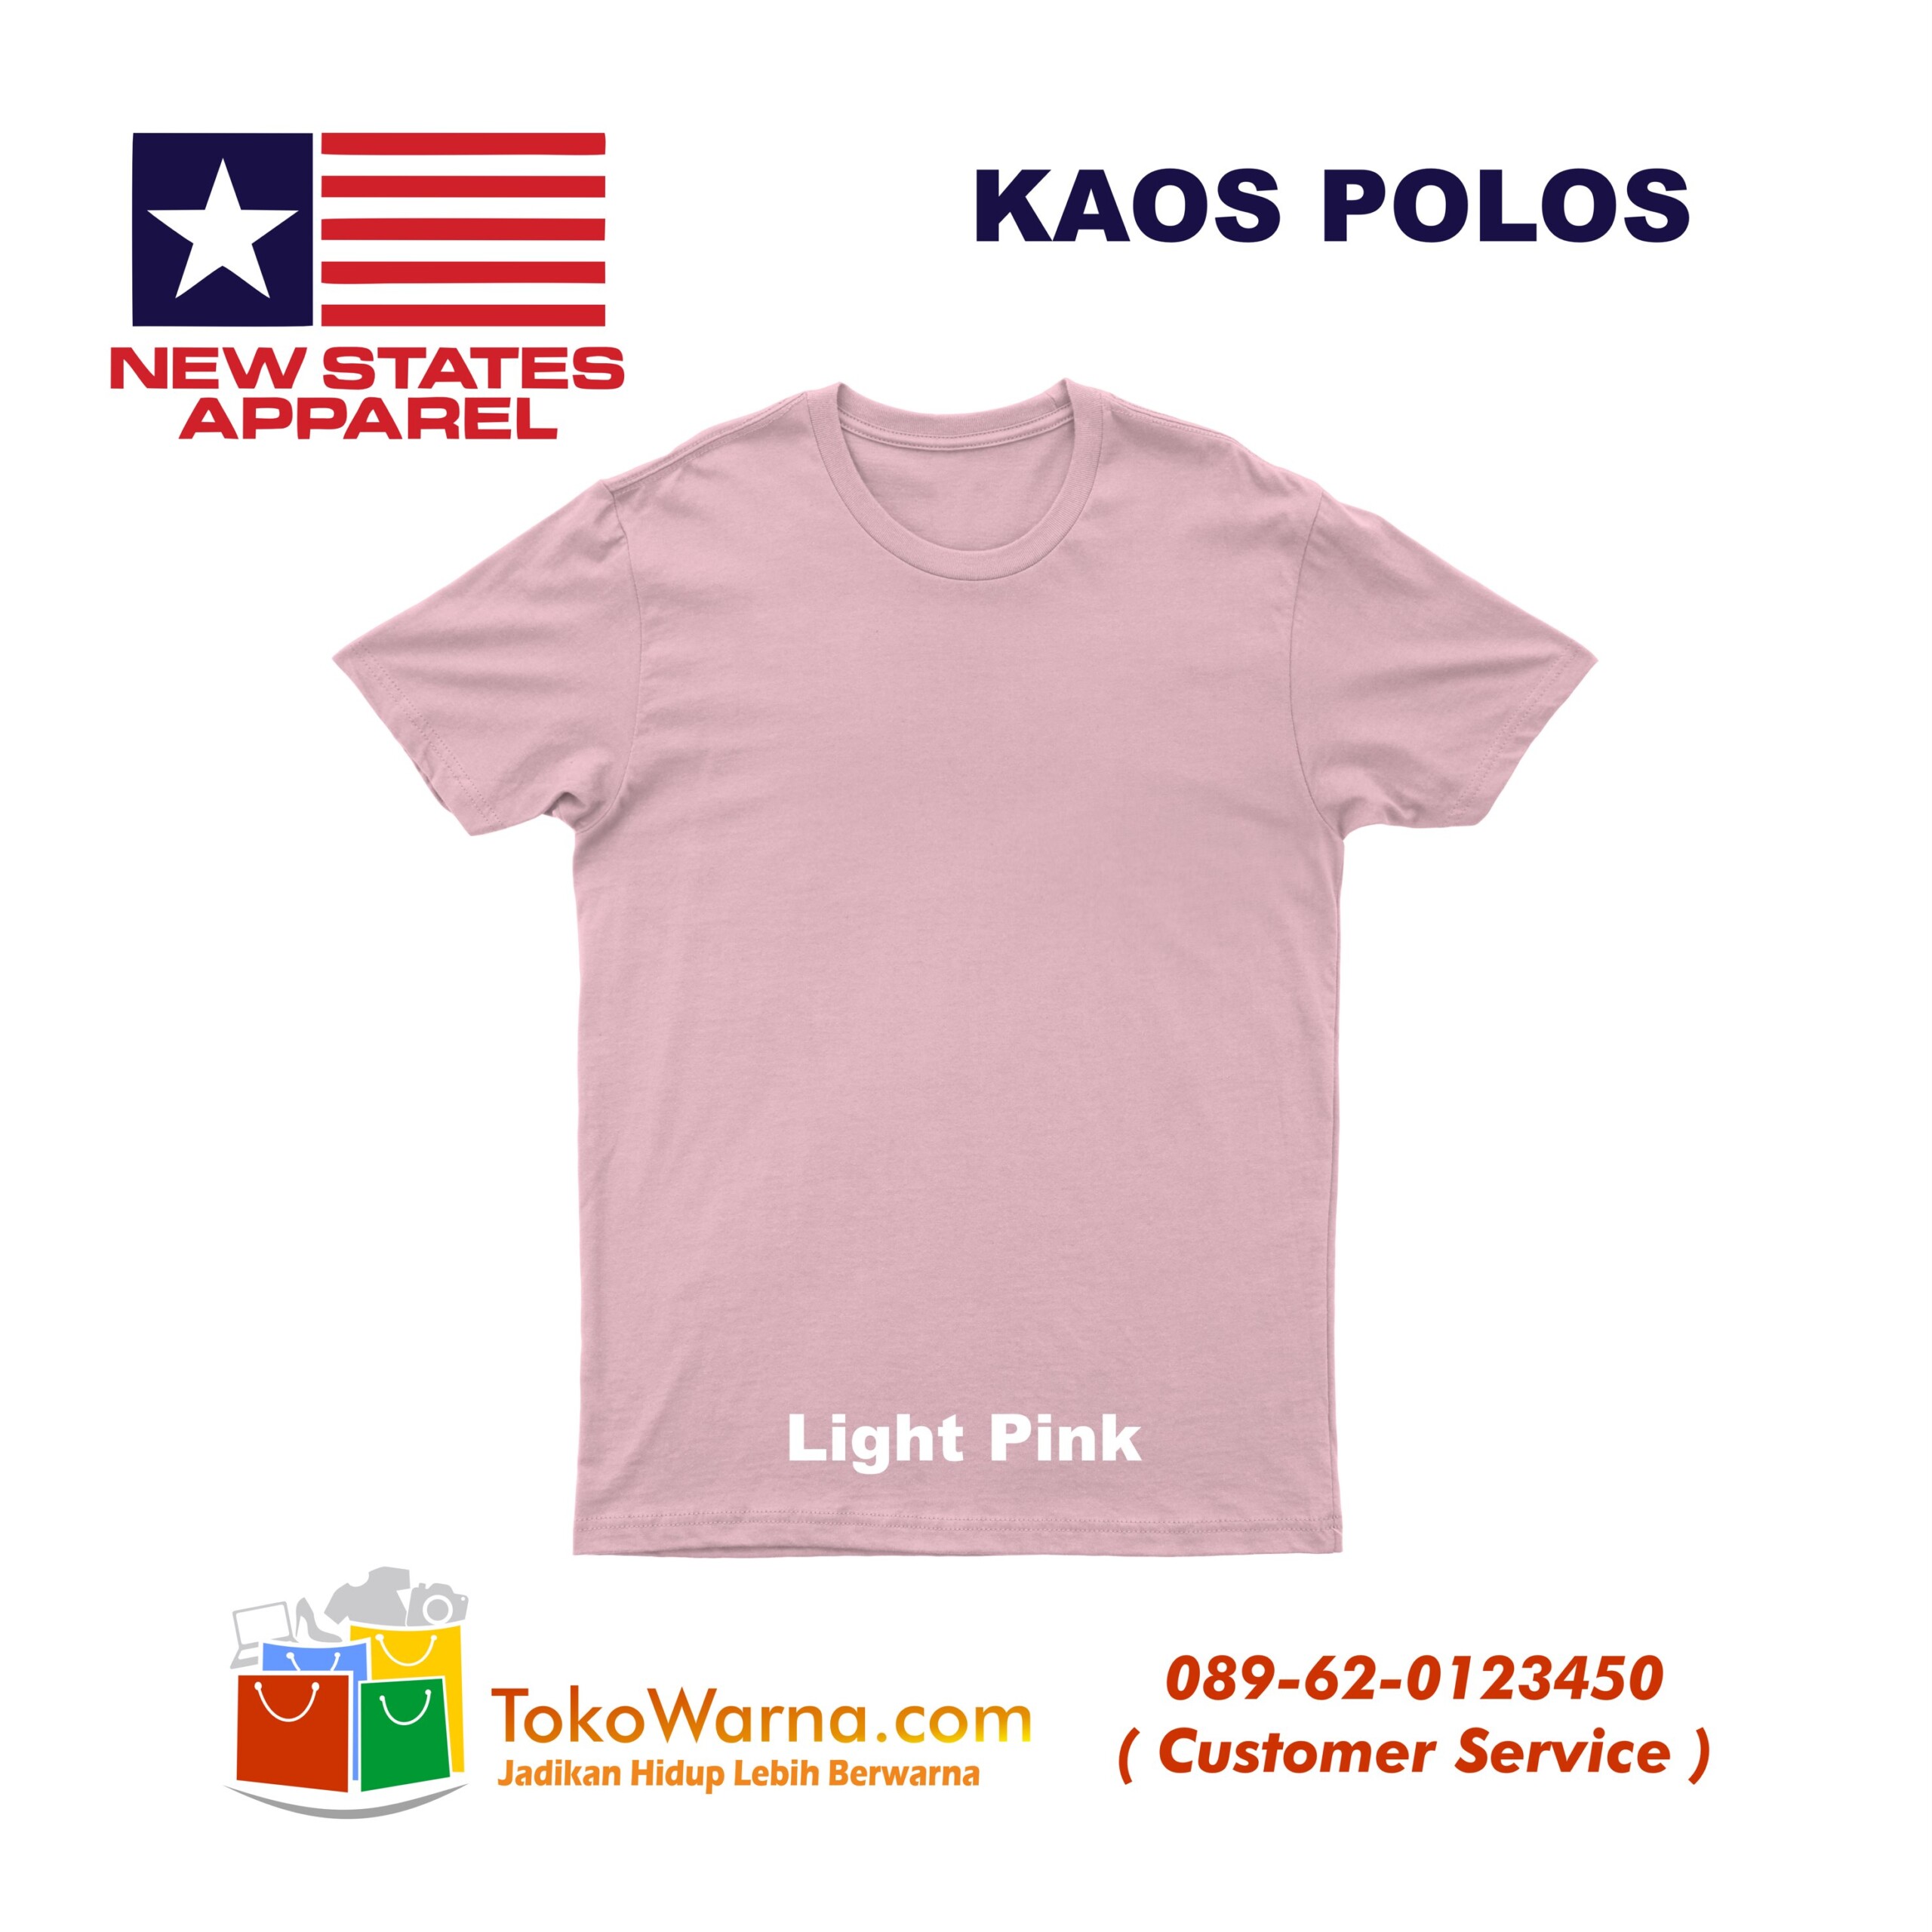 (NSA) New States Apparel Soft Tee 30s Kaos Polos Light Pink